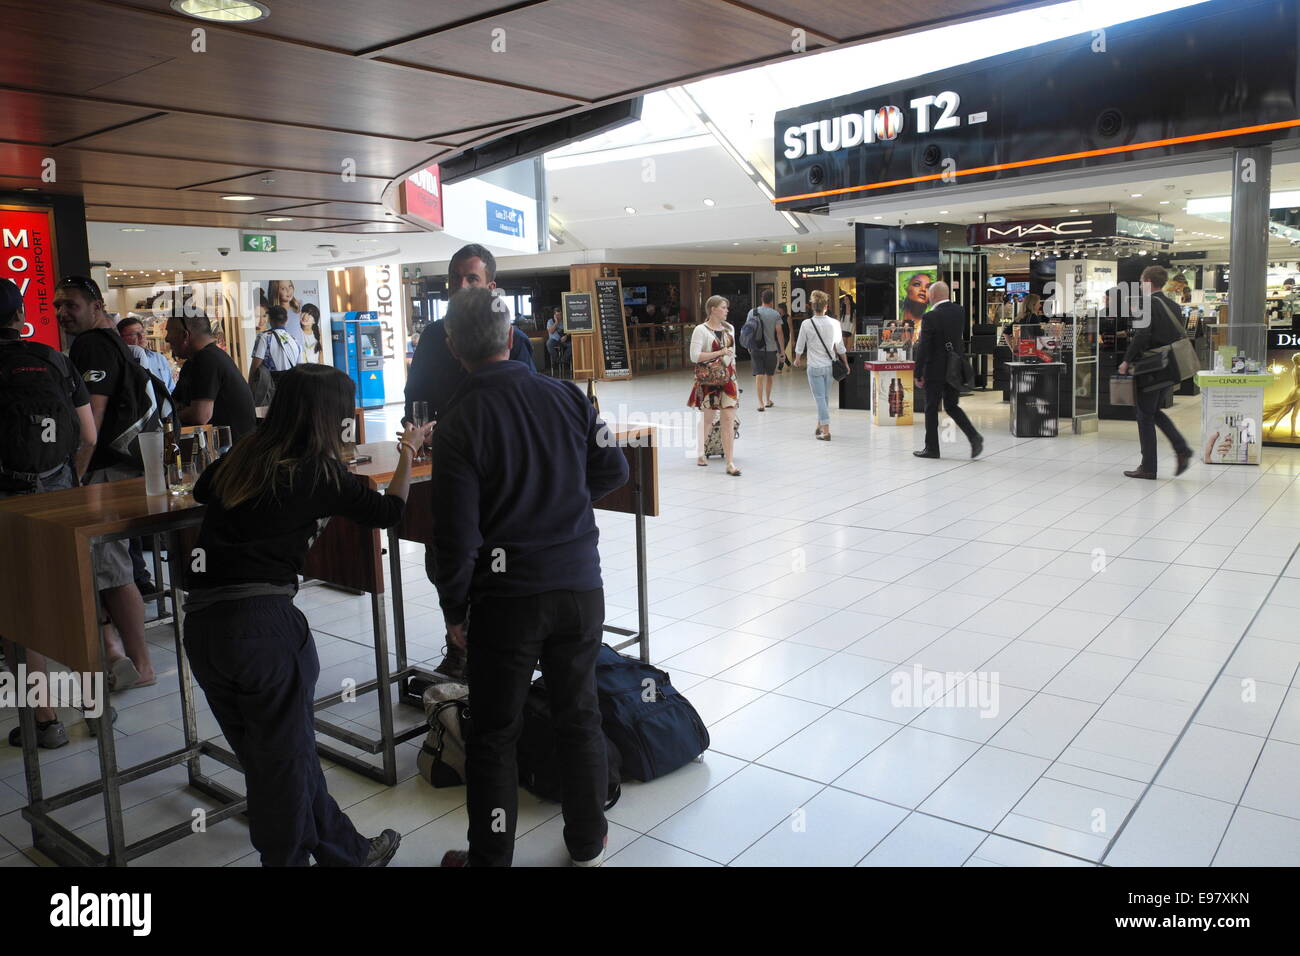 Sydney Flughafen Abflug terminal 2 Halle Loungebereich mit Geschäften, Cafés und Restaurants, new South Wales, Australien Stockfoto